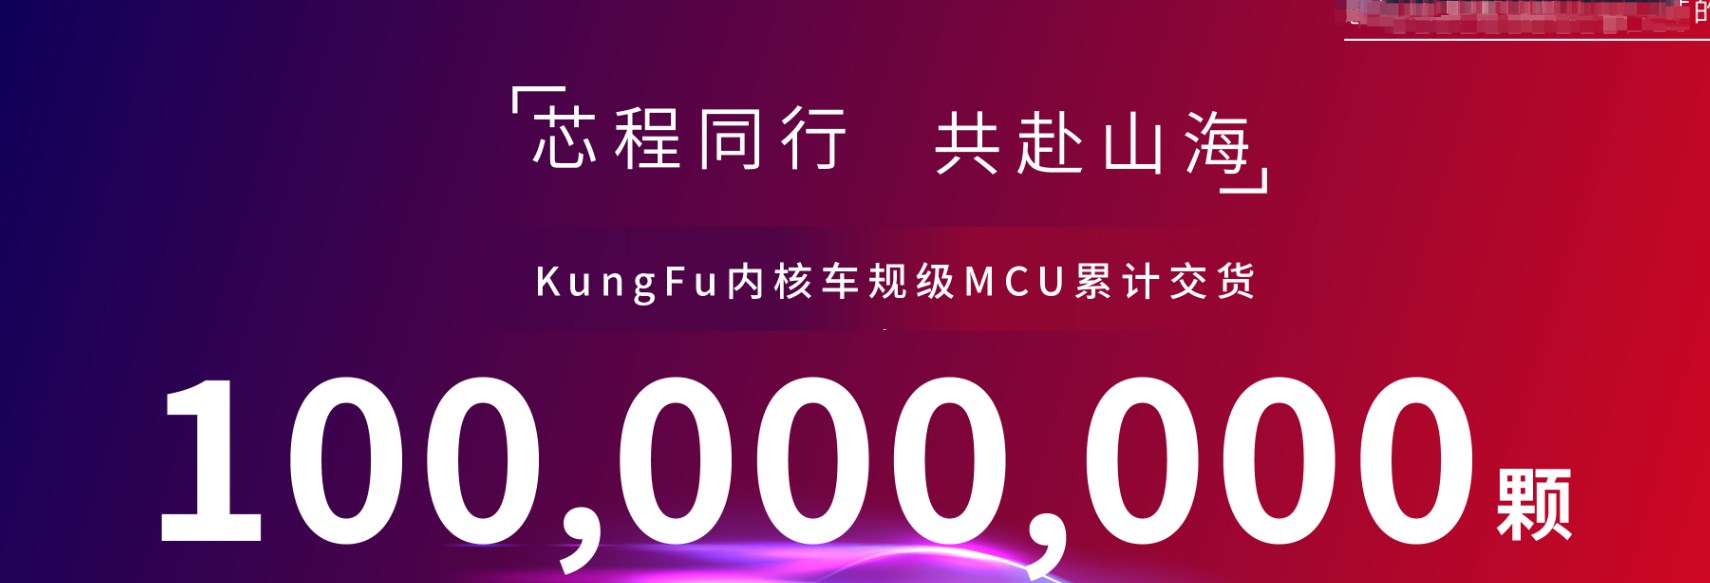 芯旺微电子KungFu内核车规级MCU累计交货突破1亿颗